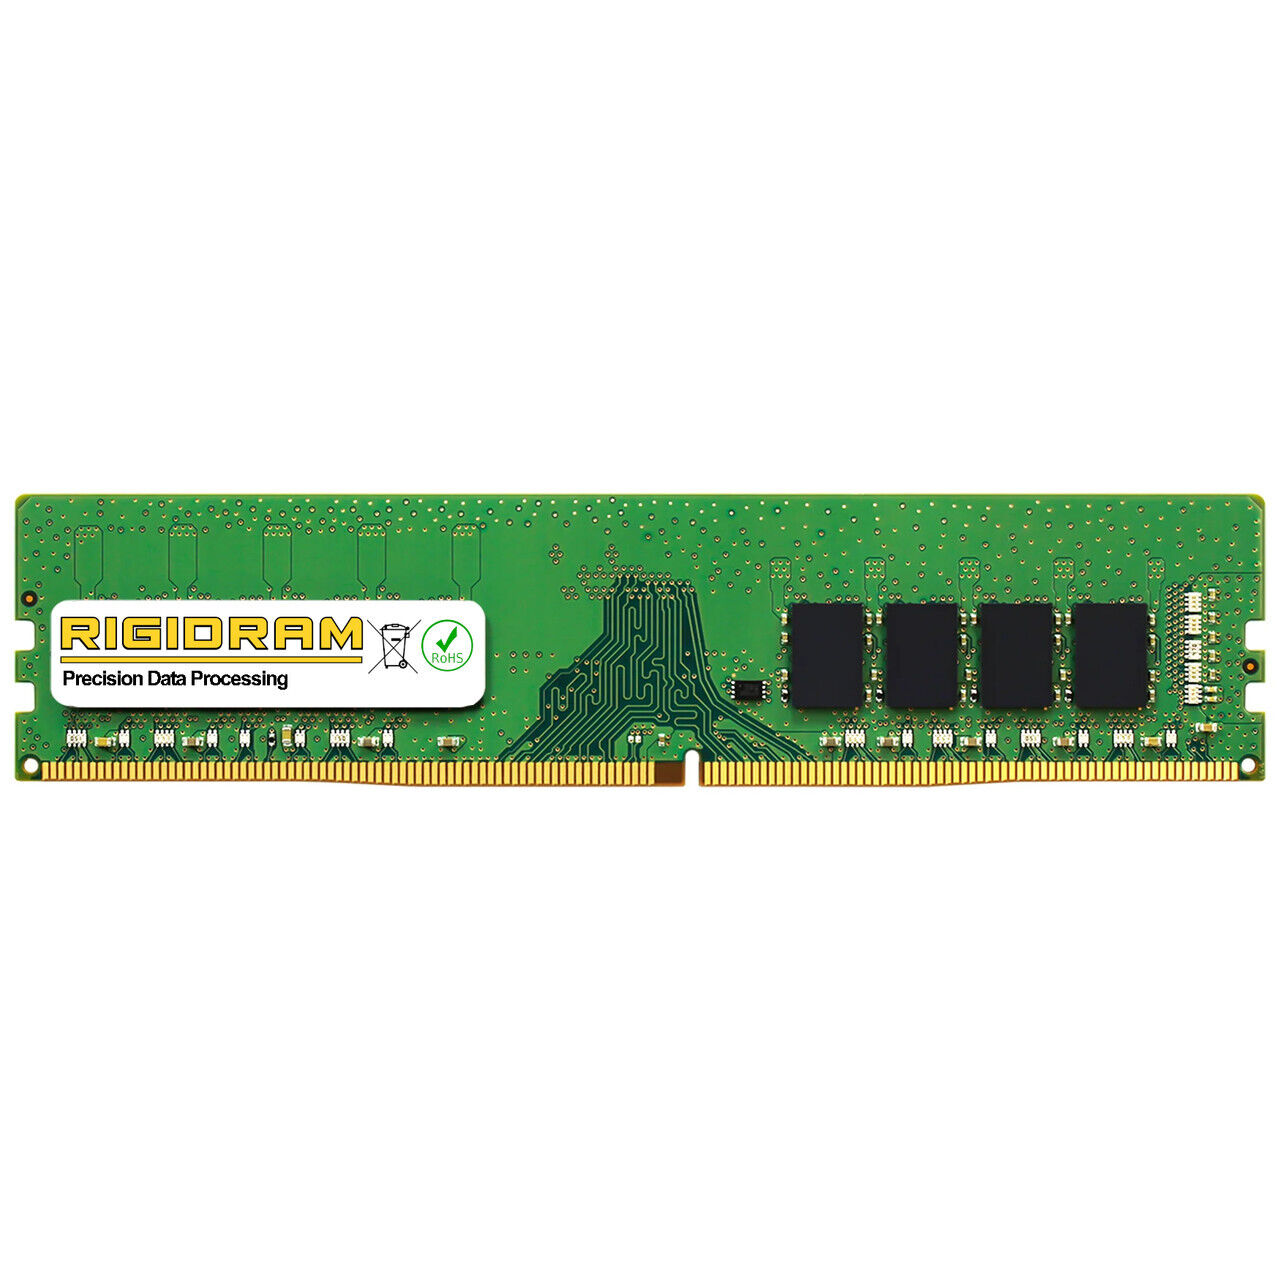 16GB RAM-16GDR4A0-UD-2400 DDR4-2400MHz RigidRAM UDIMM Memory for Qnap